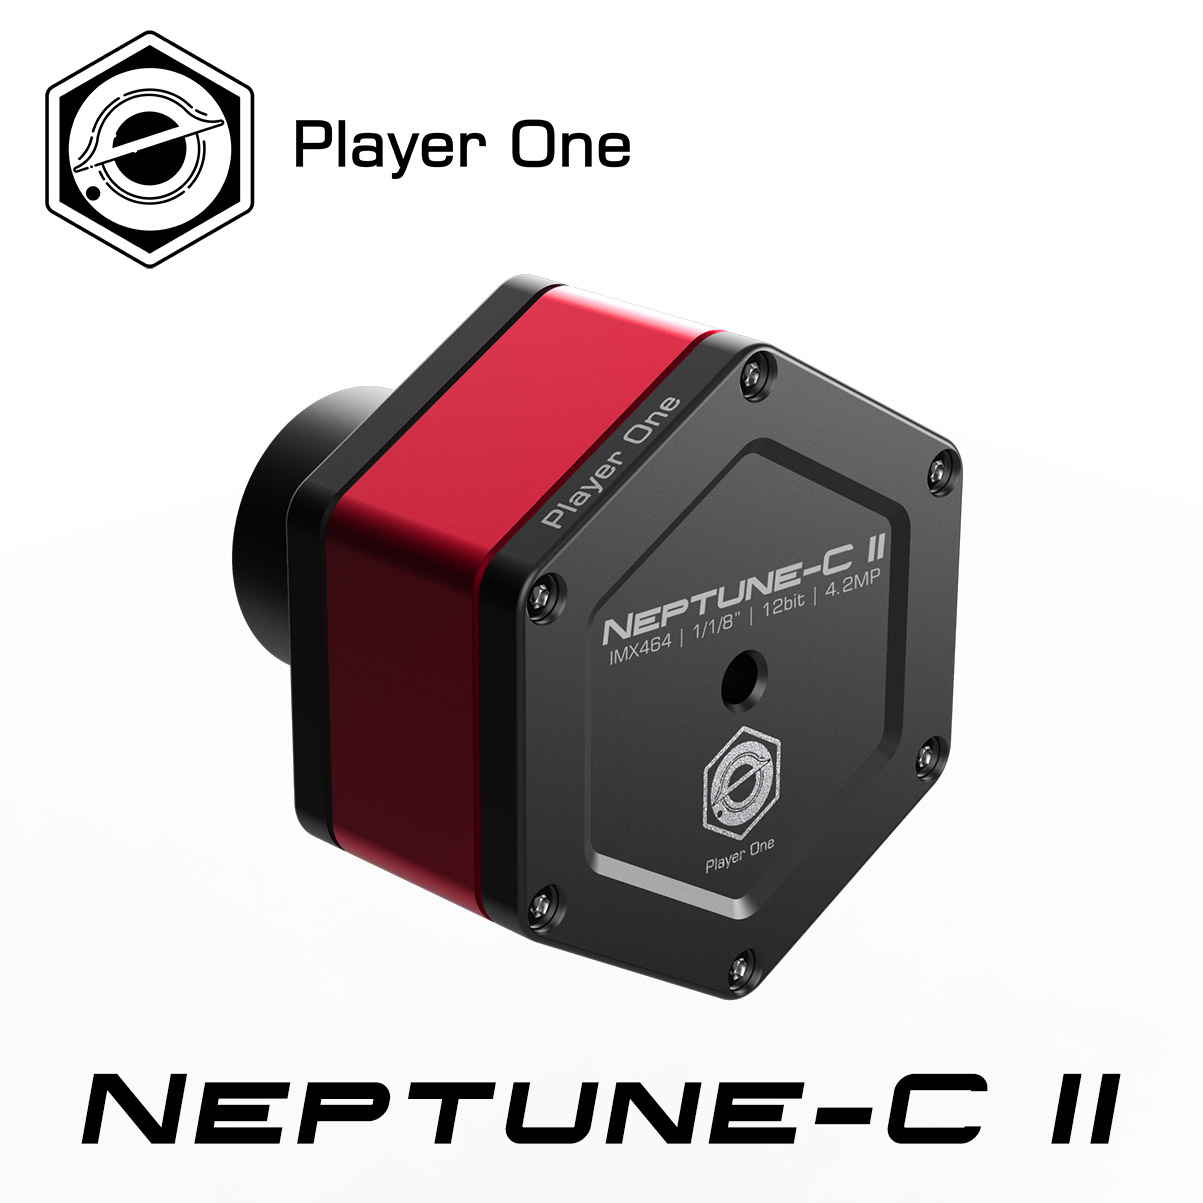 電視観望ガイドブックつき Player One 期間限定 Neptune-C II ネプチューン カラー USB3.0 IMX464搭載 惑星撮影 絶品 CMOSカメラ 電視観望に